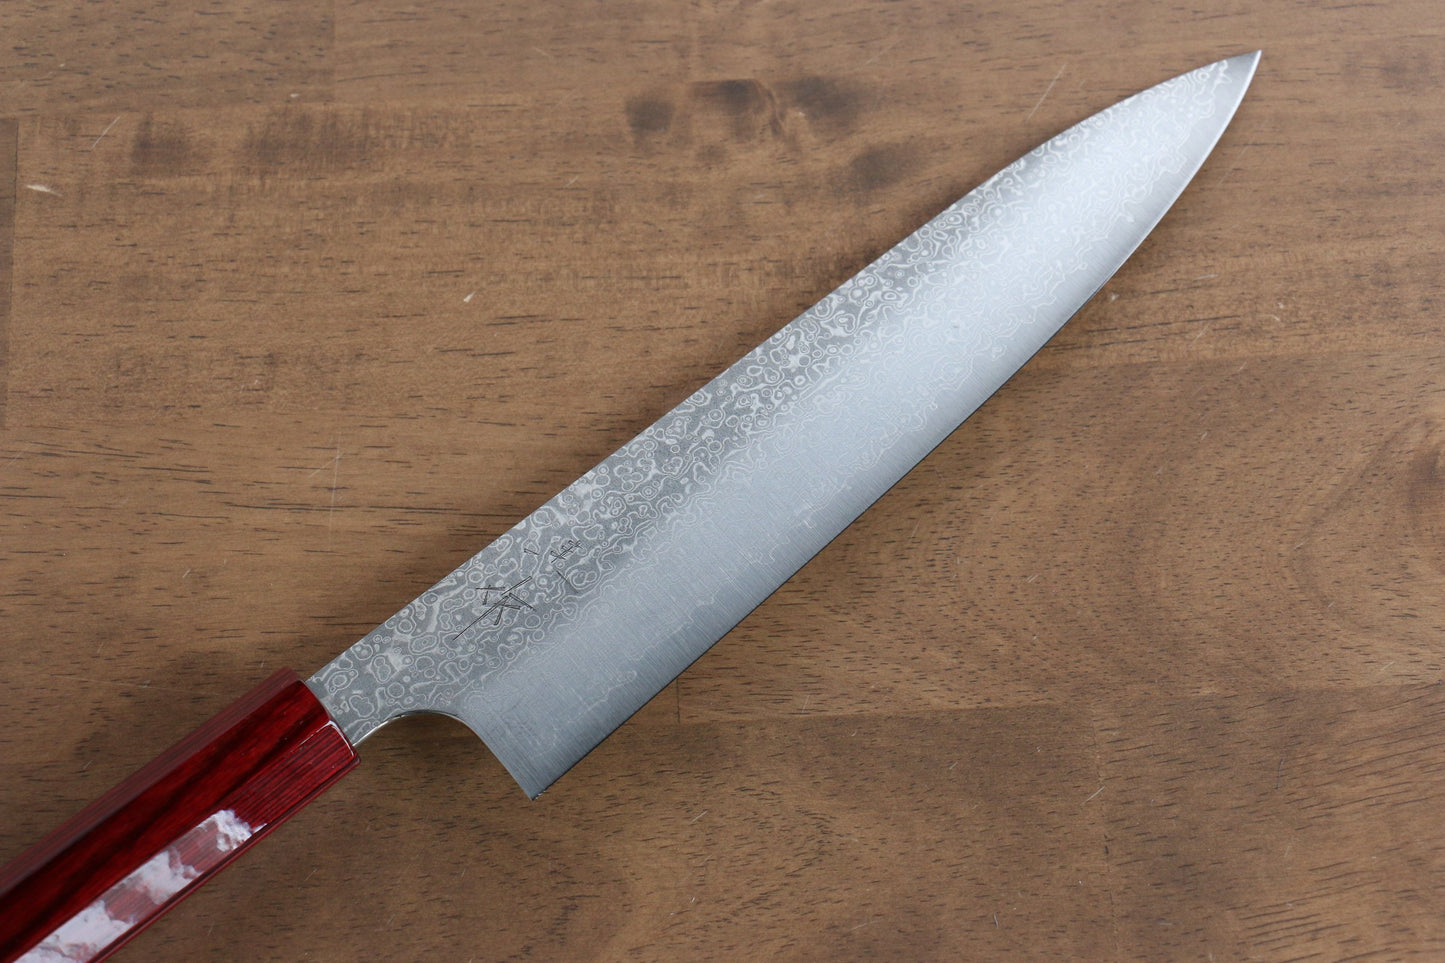 Marke Kei Kobayashi R2/SG2 Damaststahl Mehrzweckmesser Gyuto Japanisches Messer 210 mm rot lackierter Griff